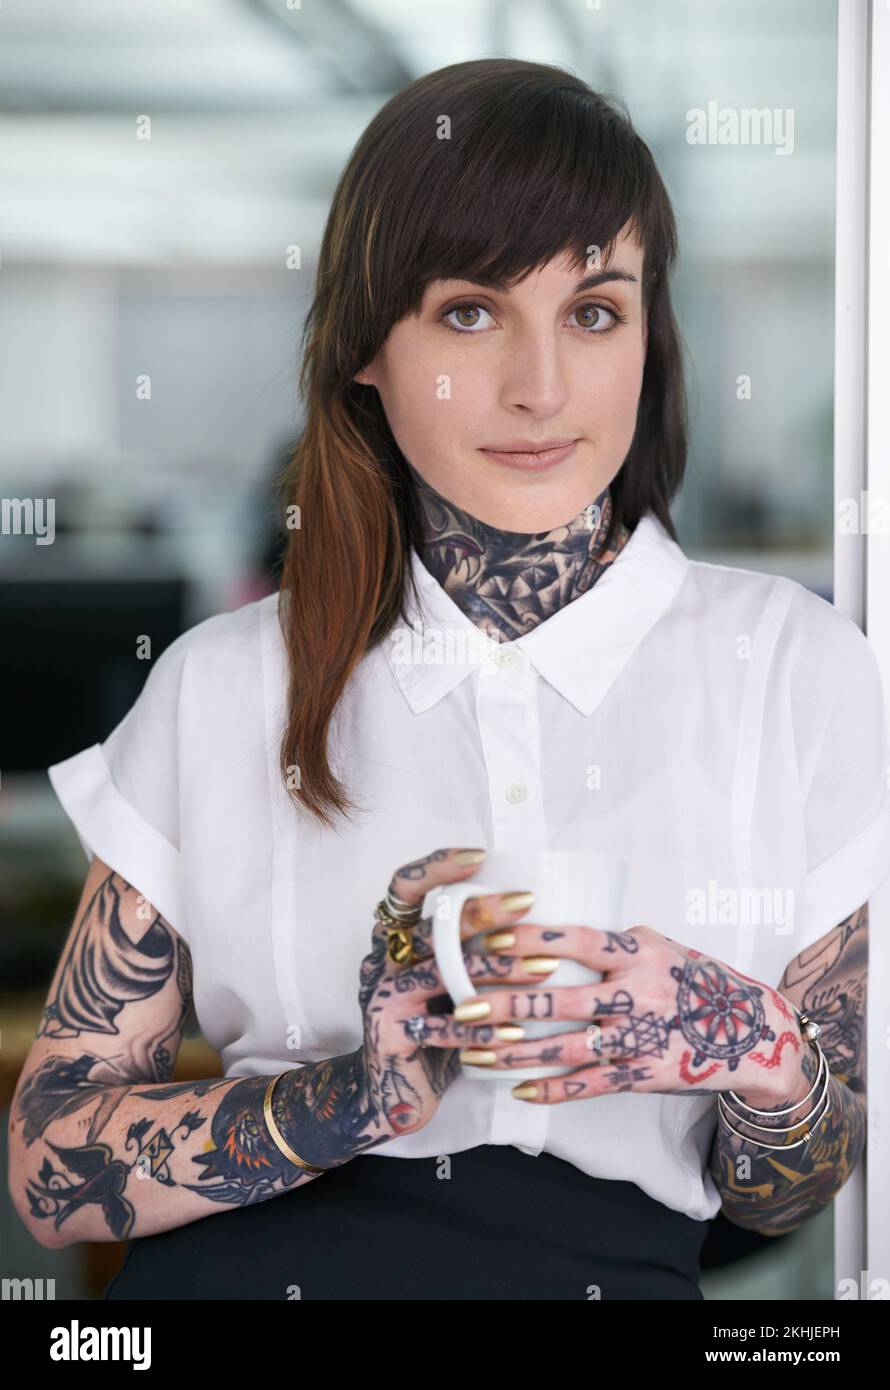 Stéréotypes - qui a besoin de em. Une photo courte d'une femme d'affaires tatouée debout dans son bureau avec une tasse de café. Banque D'Images